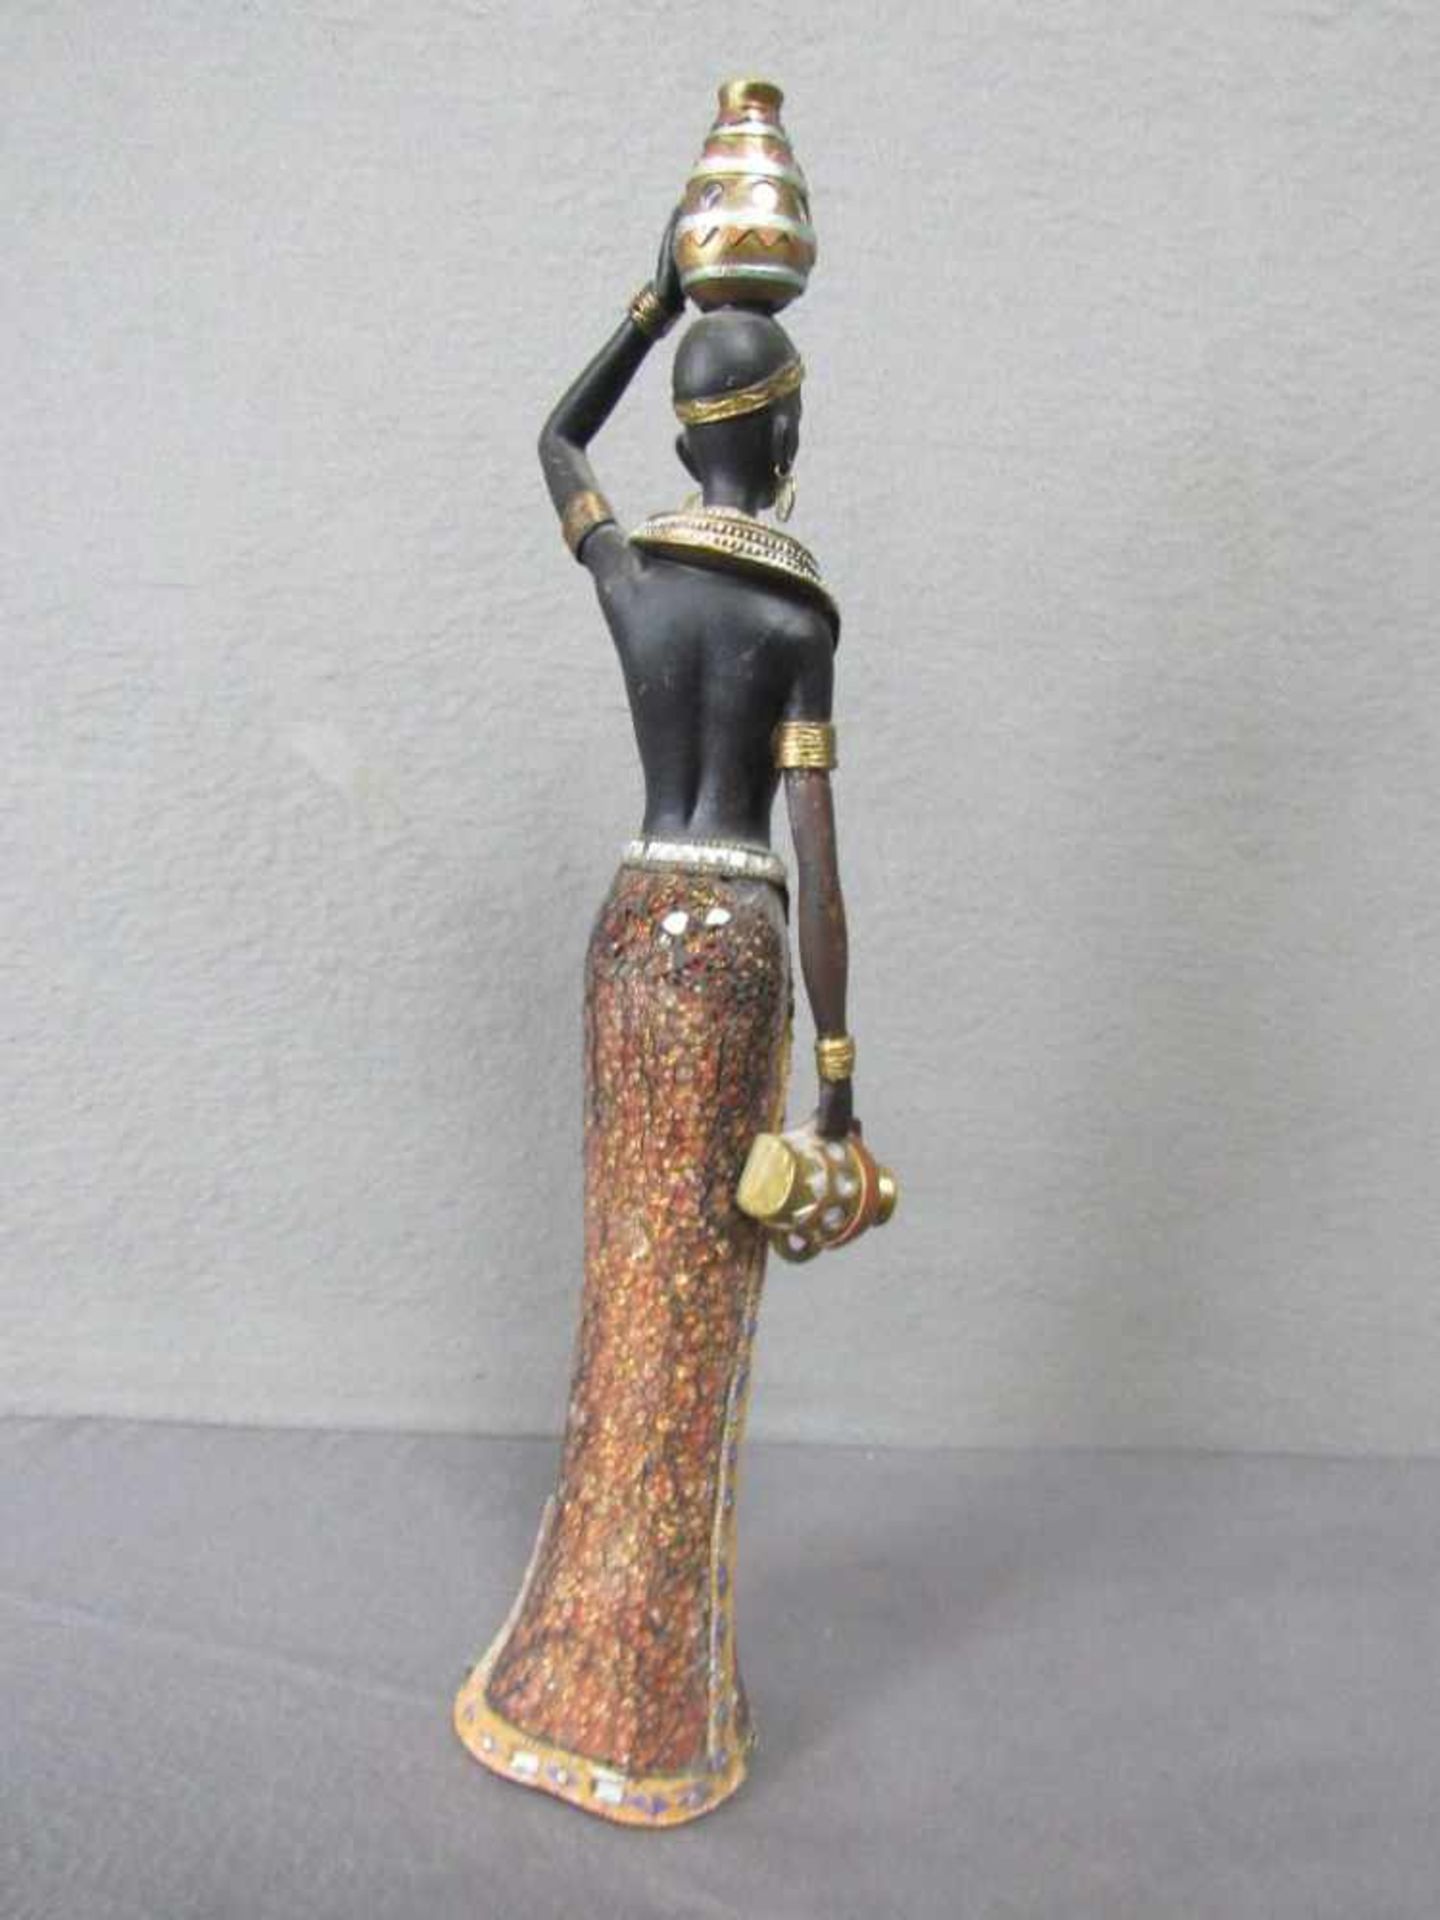 Skulptur einer farbigen Wasserträgerin 40cm hoch- - -20.00 % buyer's premium on the hammer price19. - Image 2 of 2